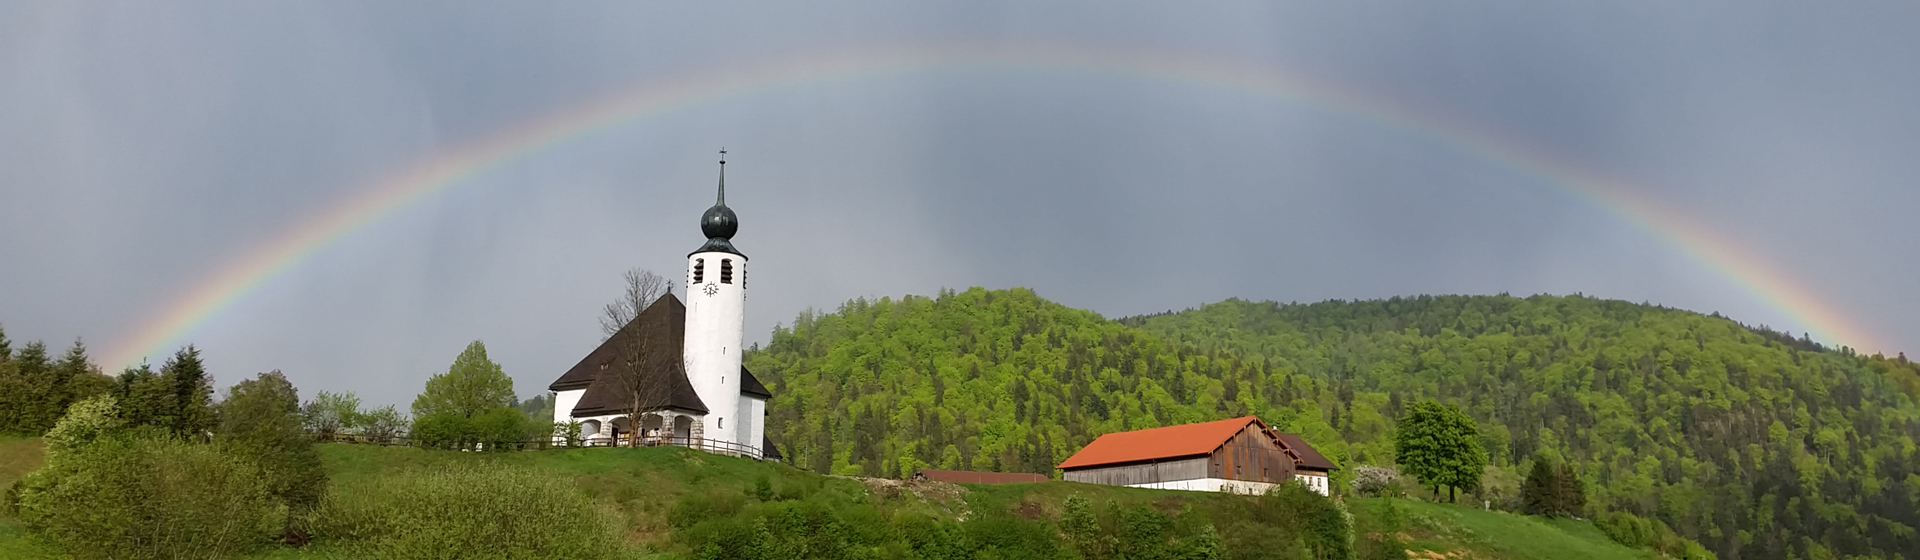 DH – WB Kirche mit Regenbogen